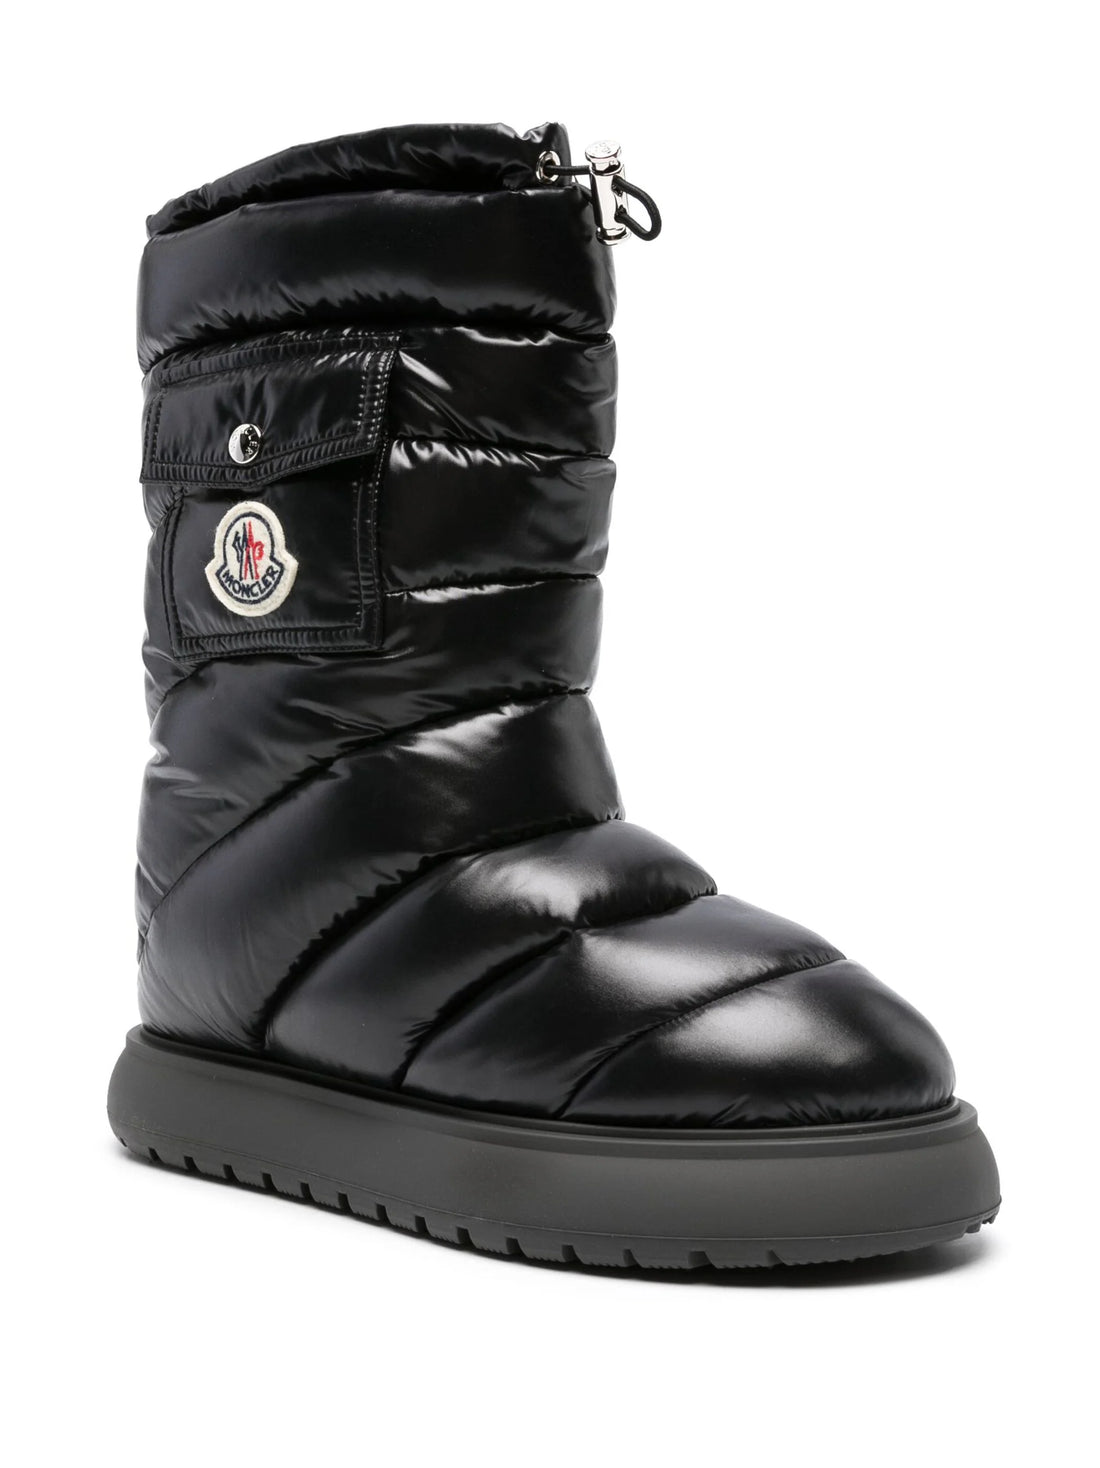 MONCLER WOMEN Gaia Pocket Mid Snow Boots Black - MAISONDEFASHION.COM